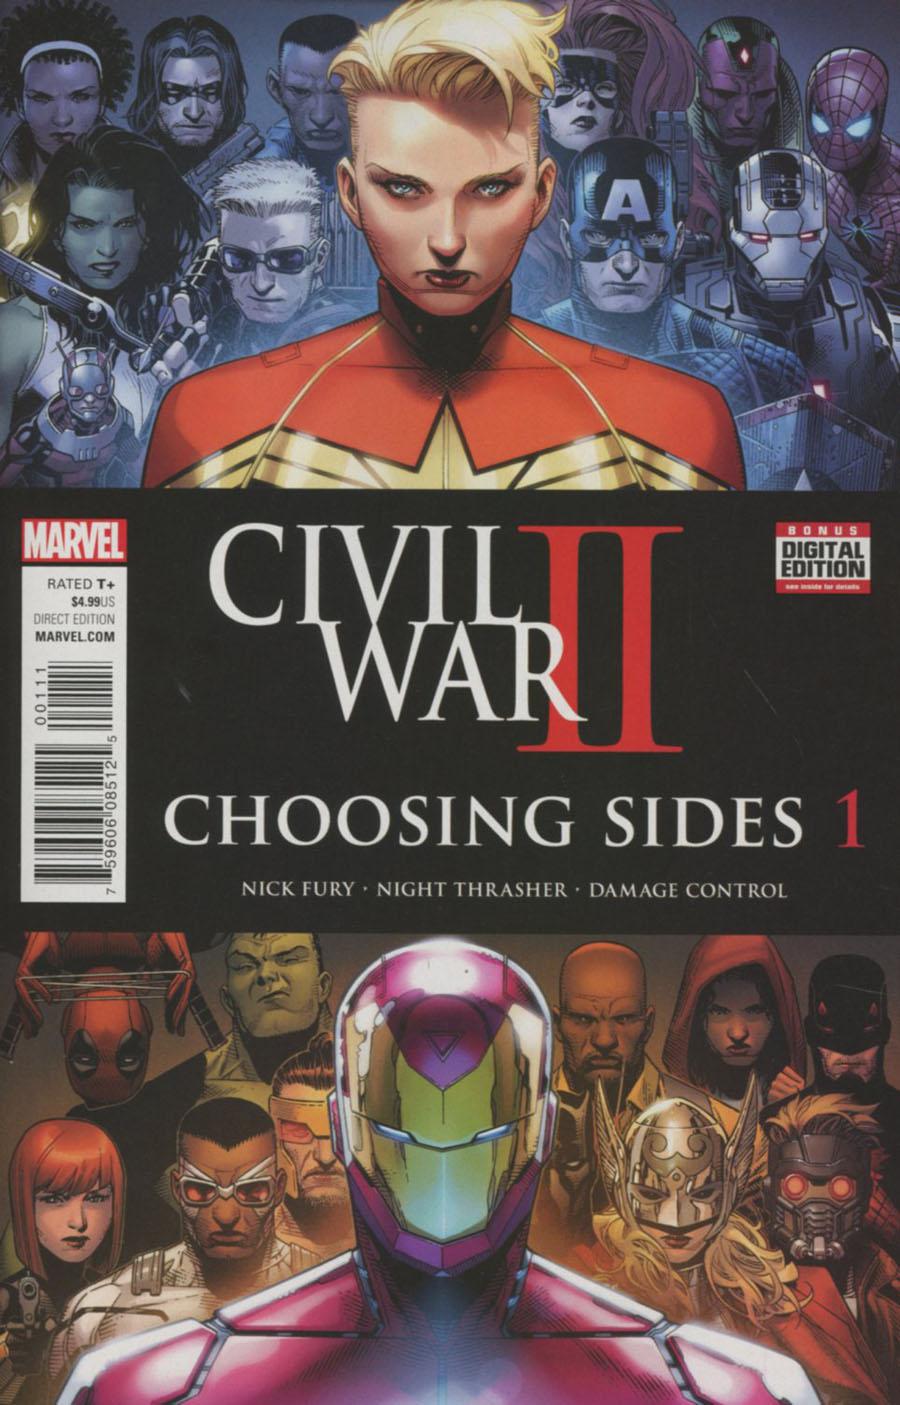 Civil War II Choosing Sides Vol. 1 #1